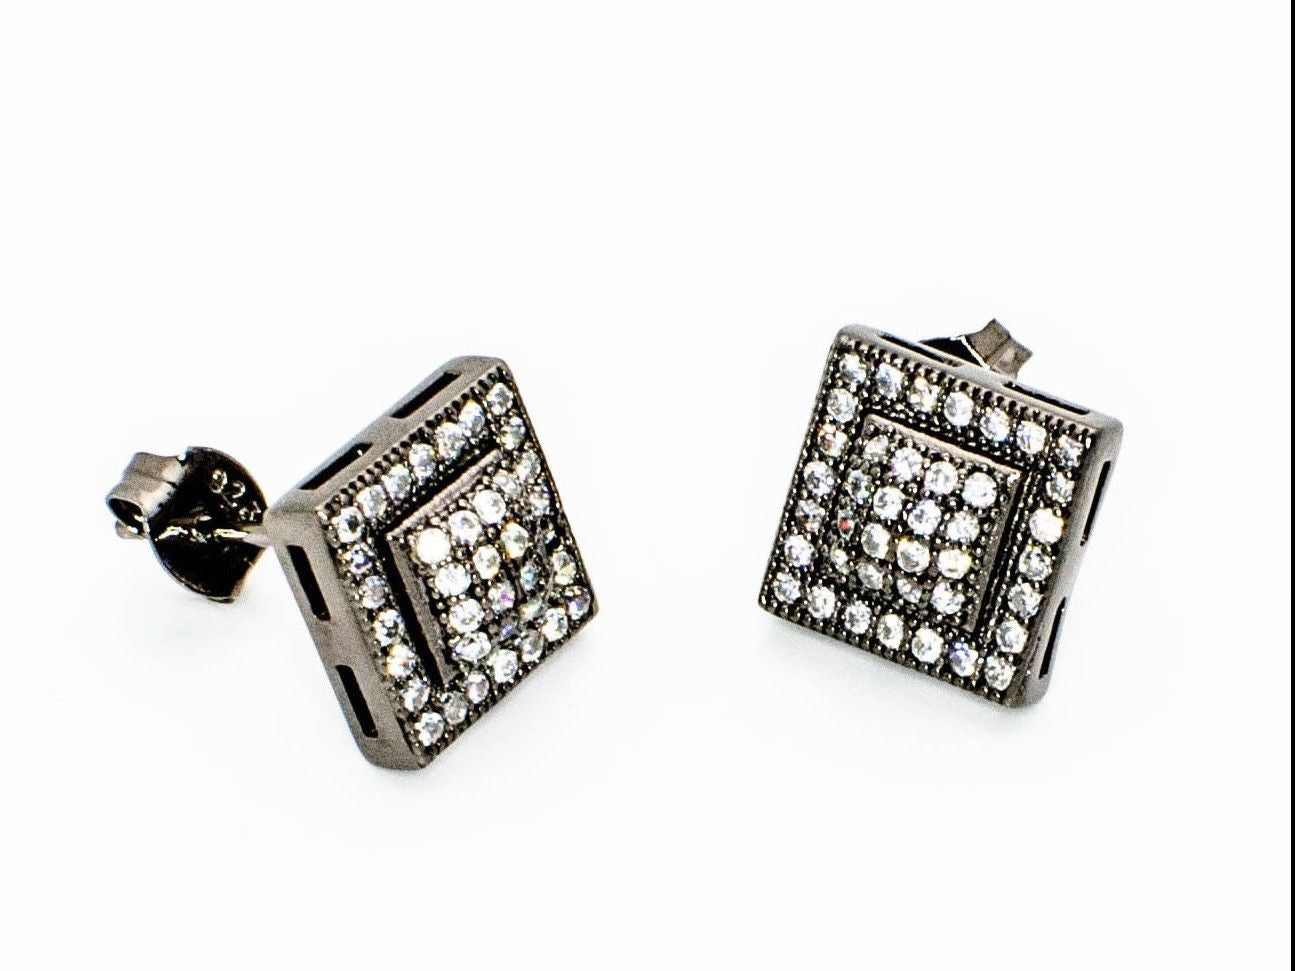 10mm Cubic Zirconia Stud Earrings in Sterling Silver